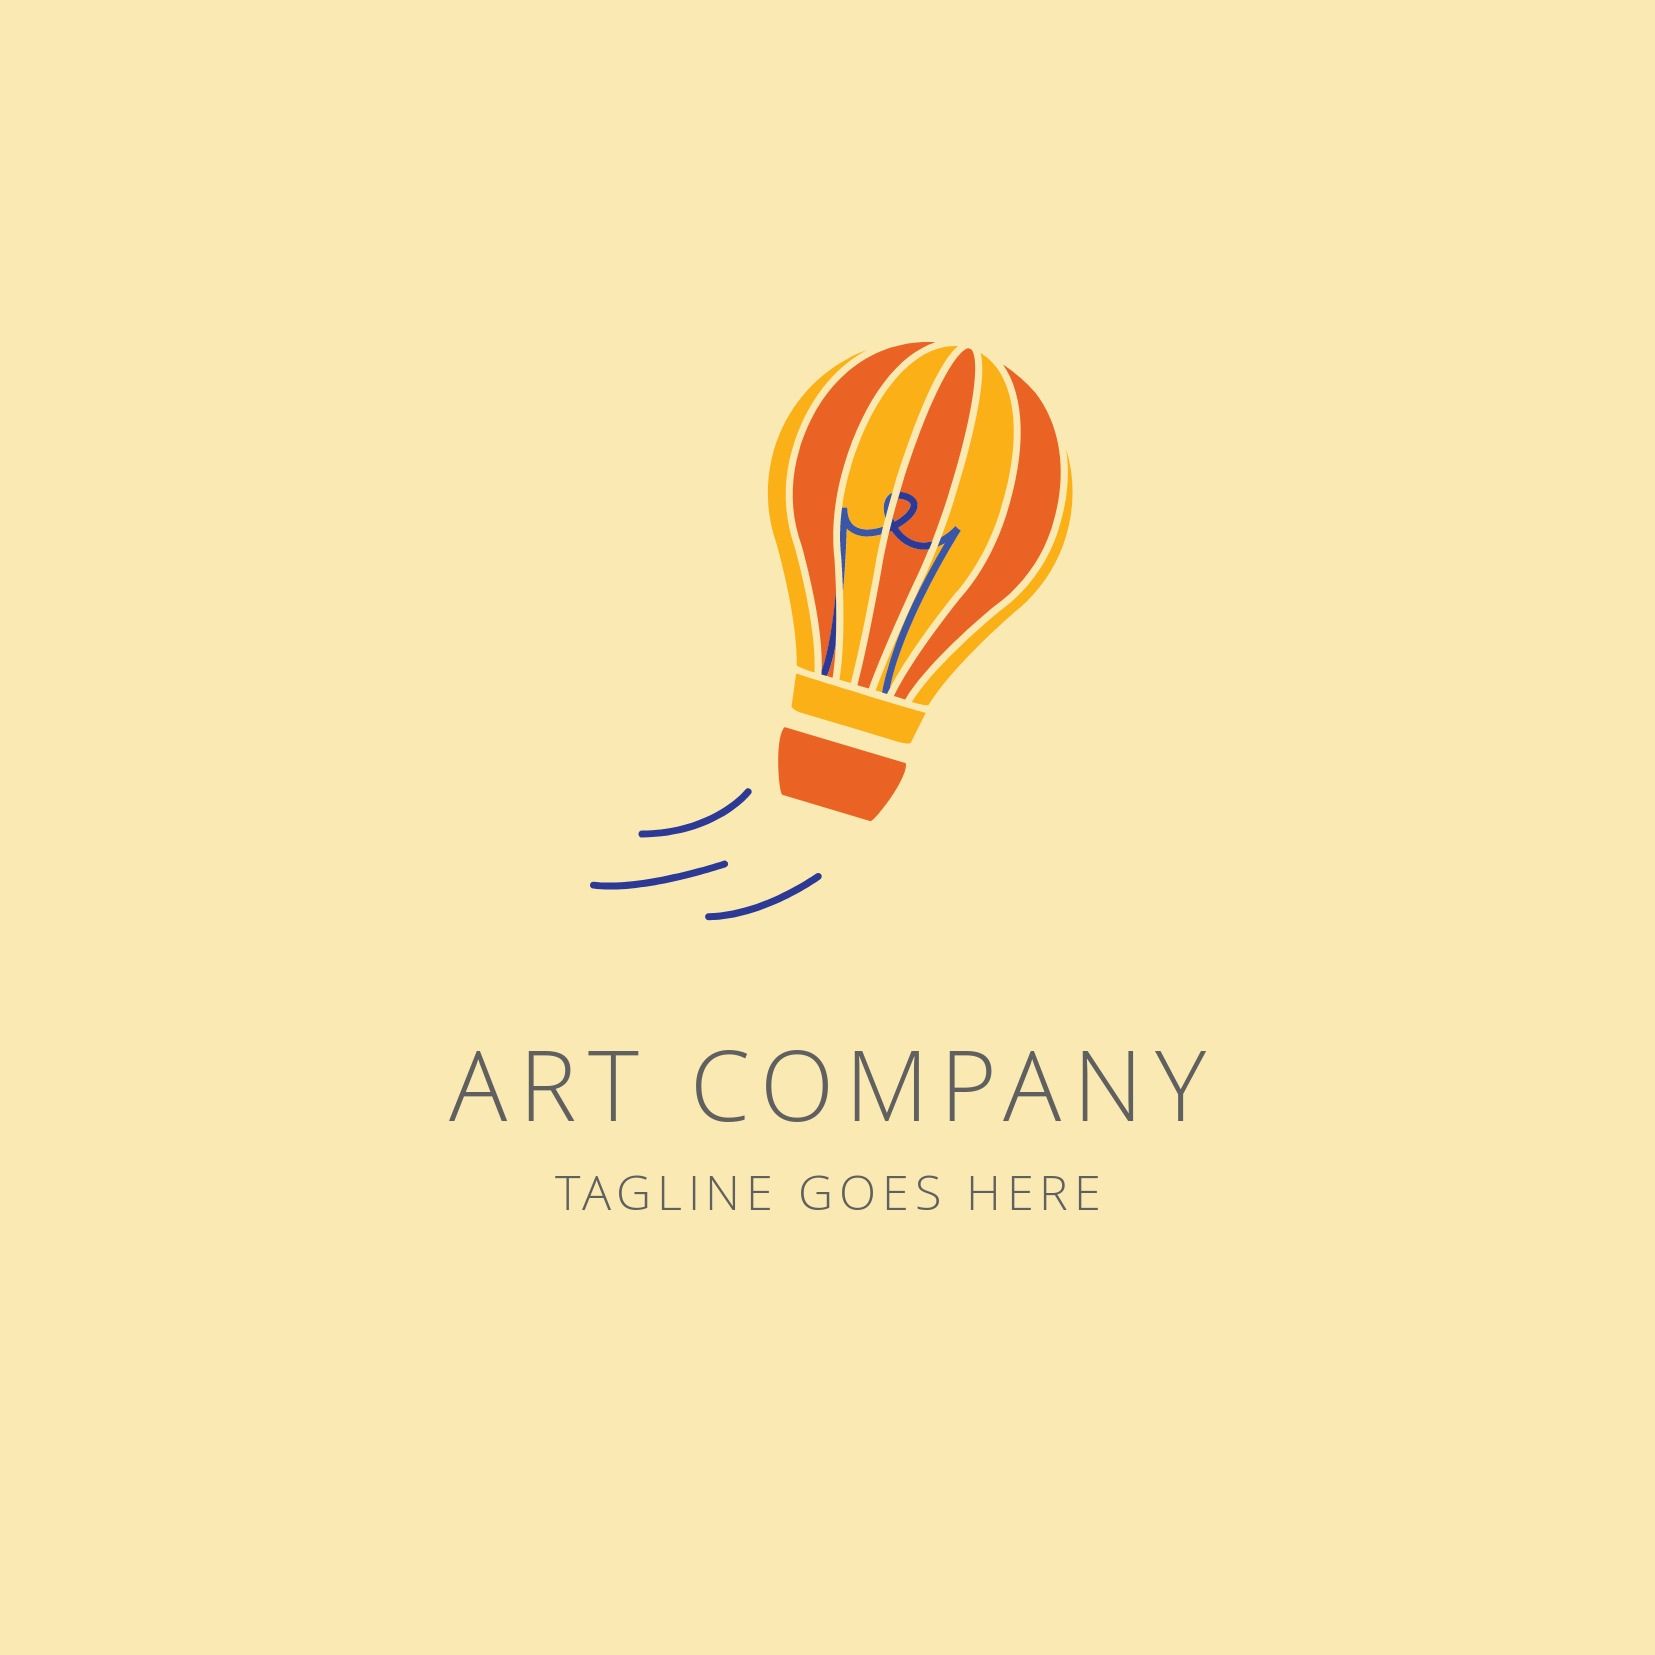 Idée de logo du conseil étudiant - Image